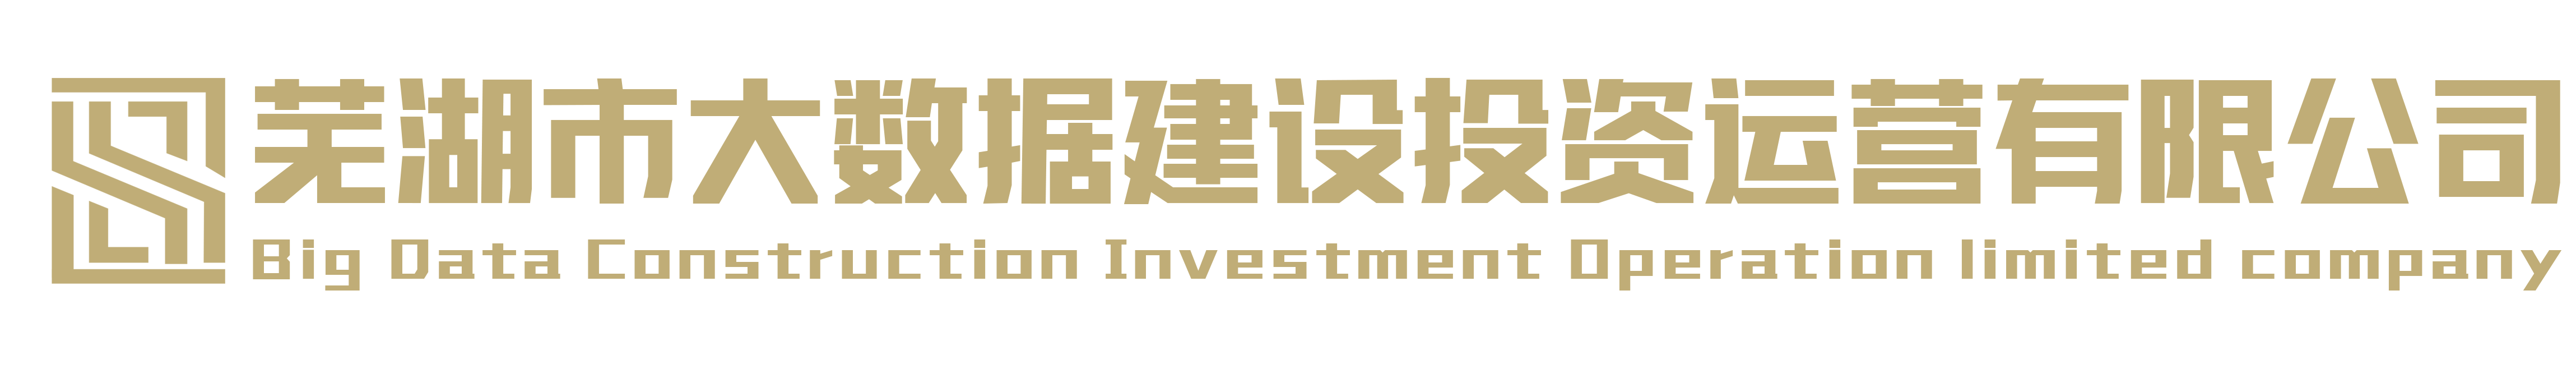 芜湖市大数据建设投资运营有限公司